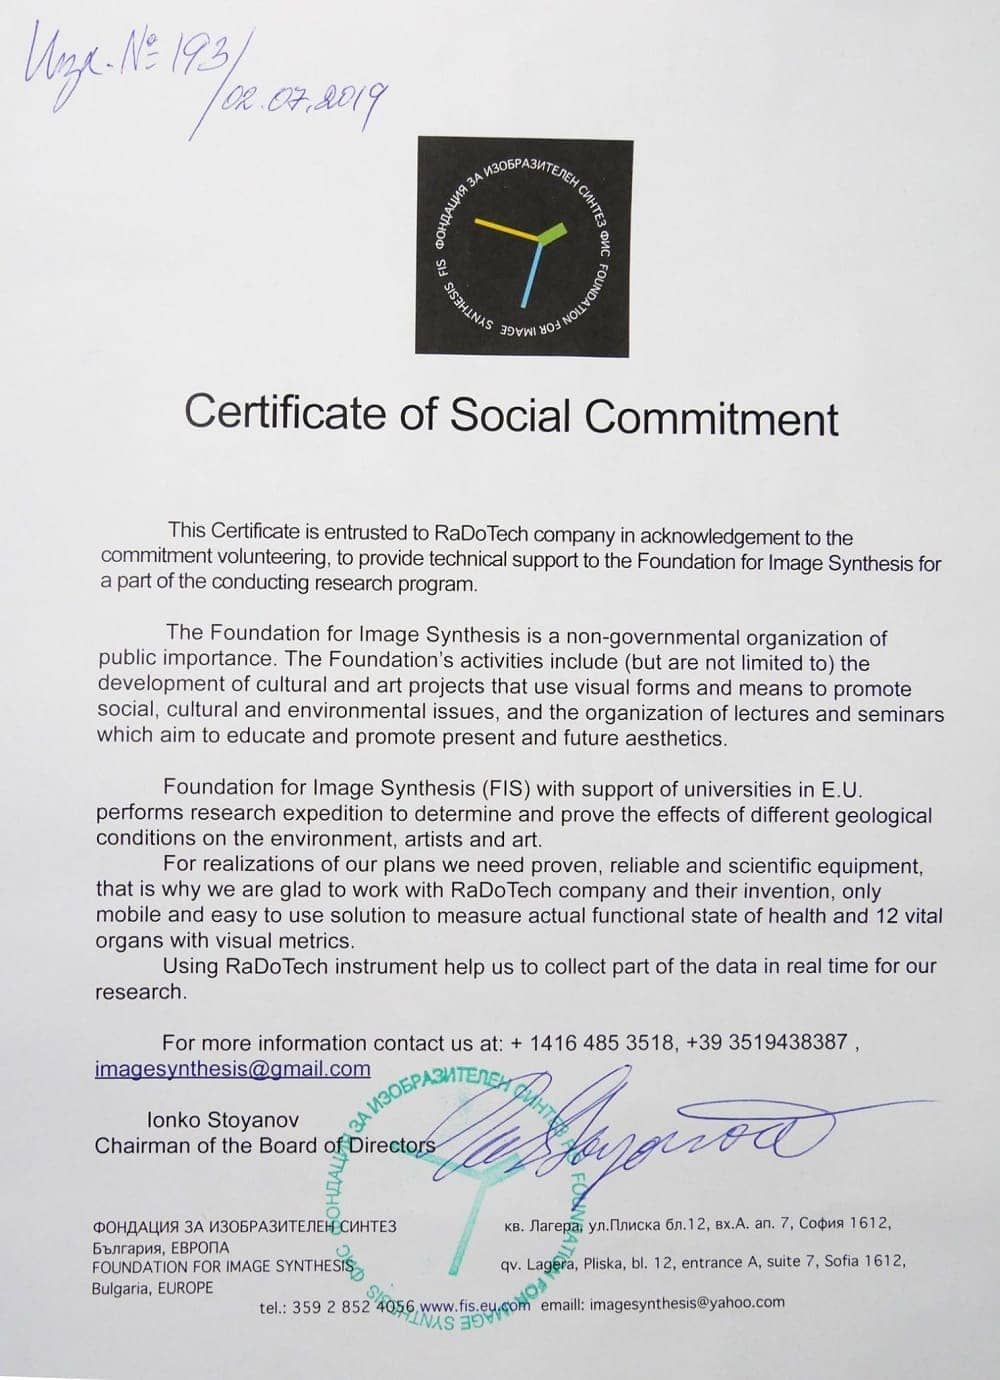 Сертификат признание социального вклада RaDoTech Европейской Академии 